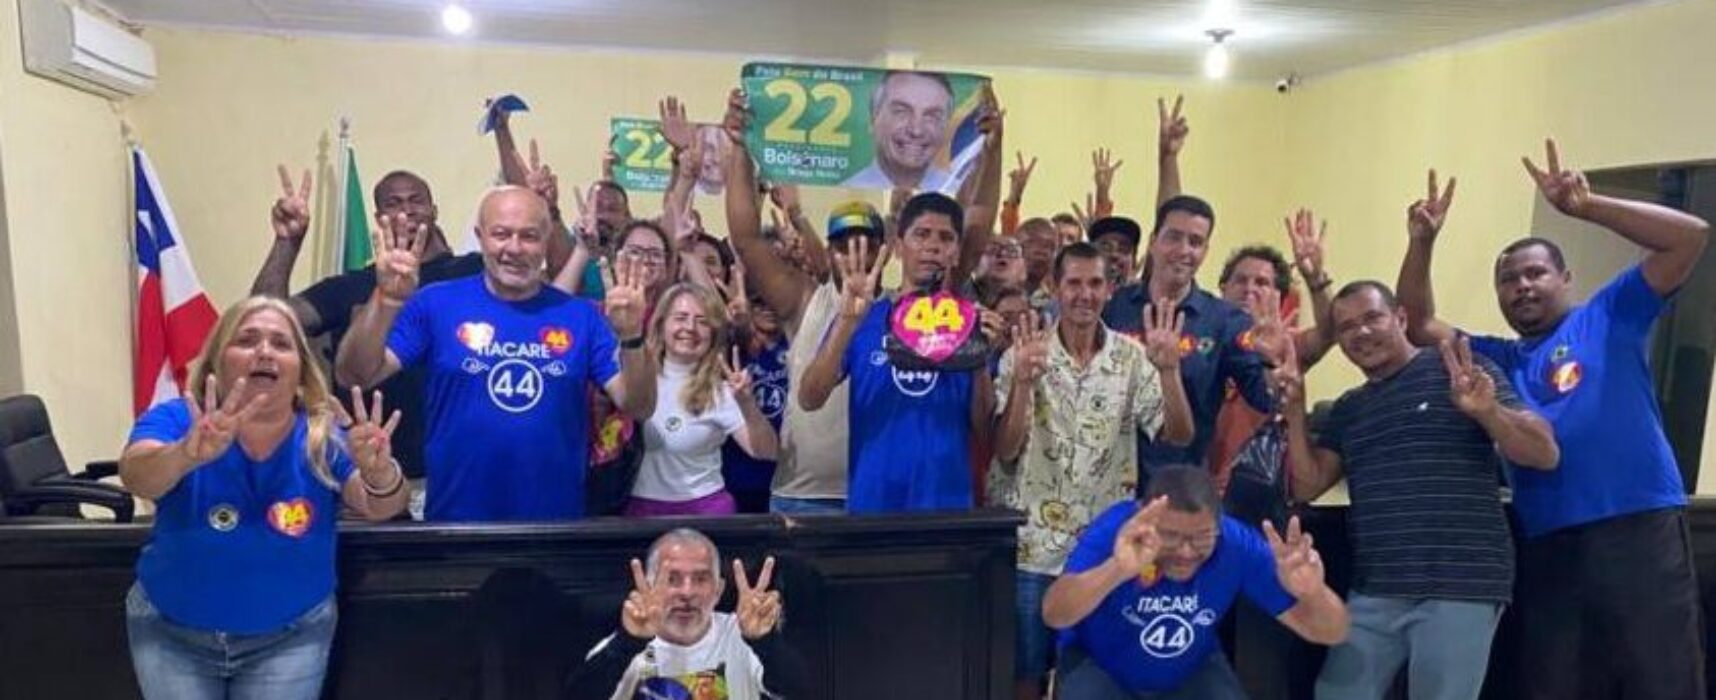 Lideranças de Itacaré confirmam o apoio a ACM Neto e Bolsonaro